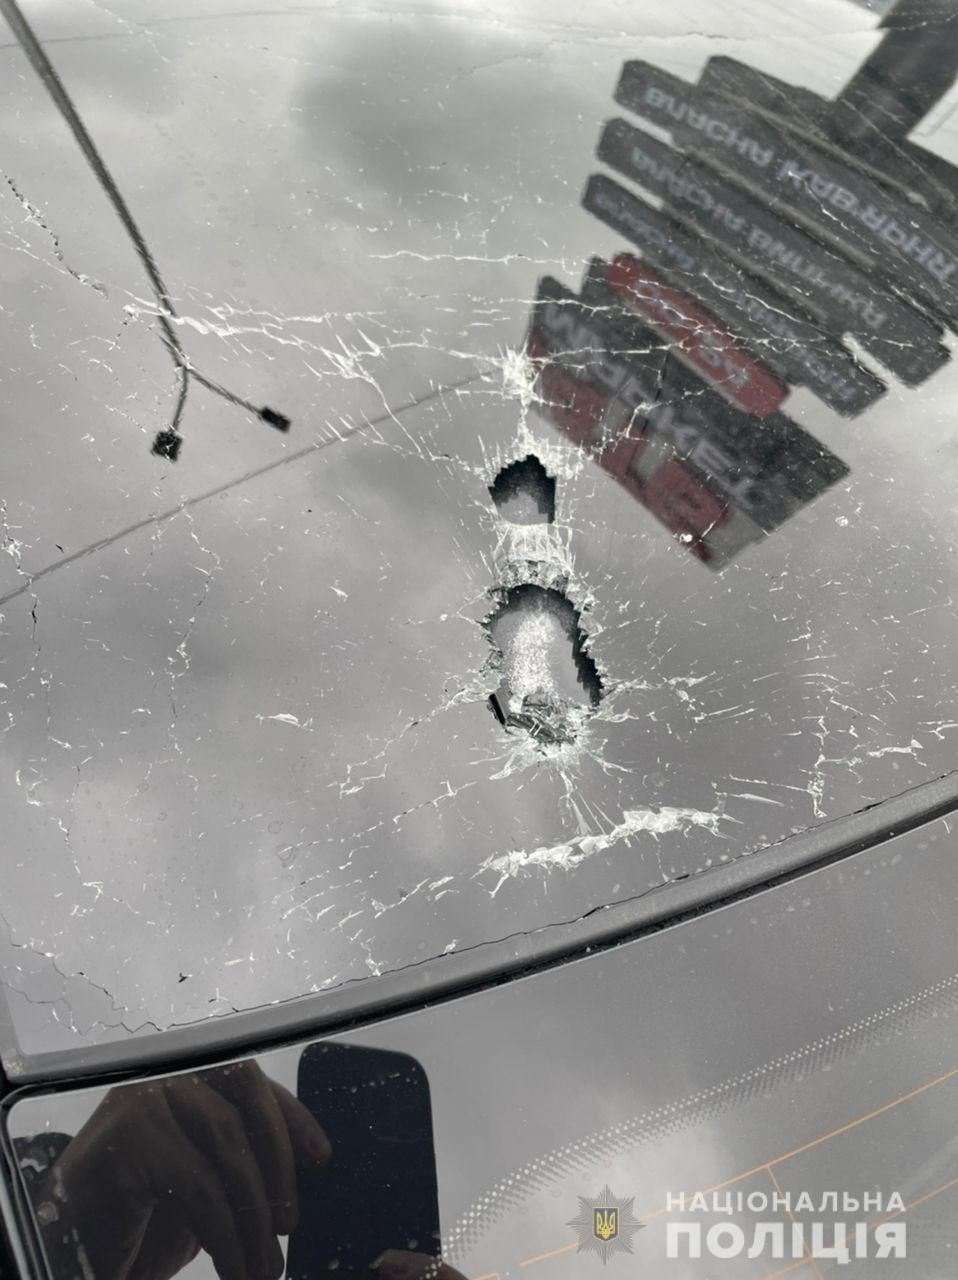 Появились фото и видео обстрелянного авто Шефира: новые подробности покушения